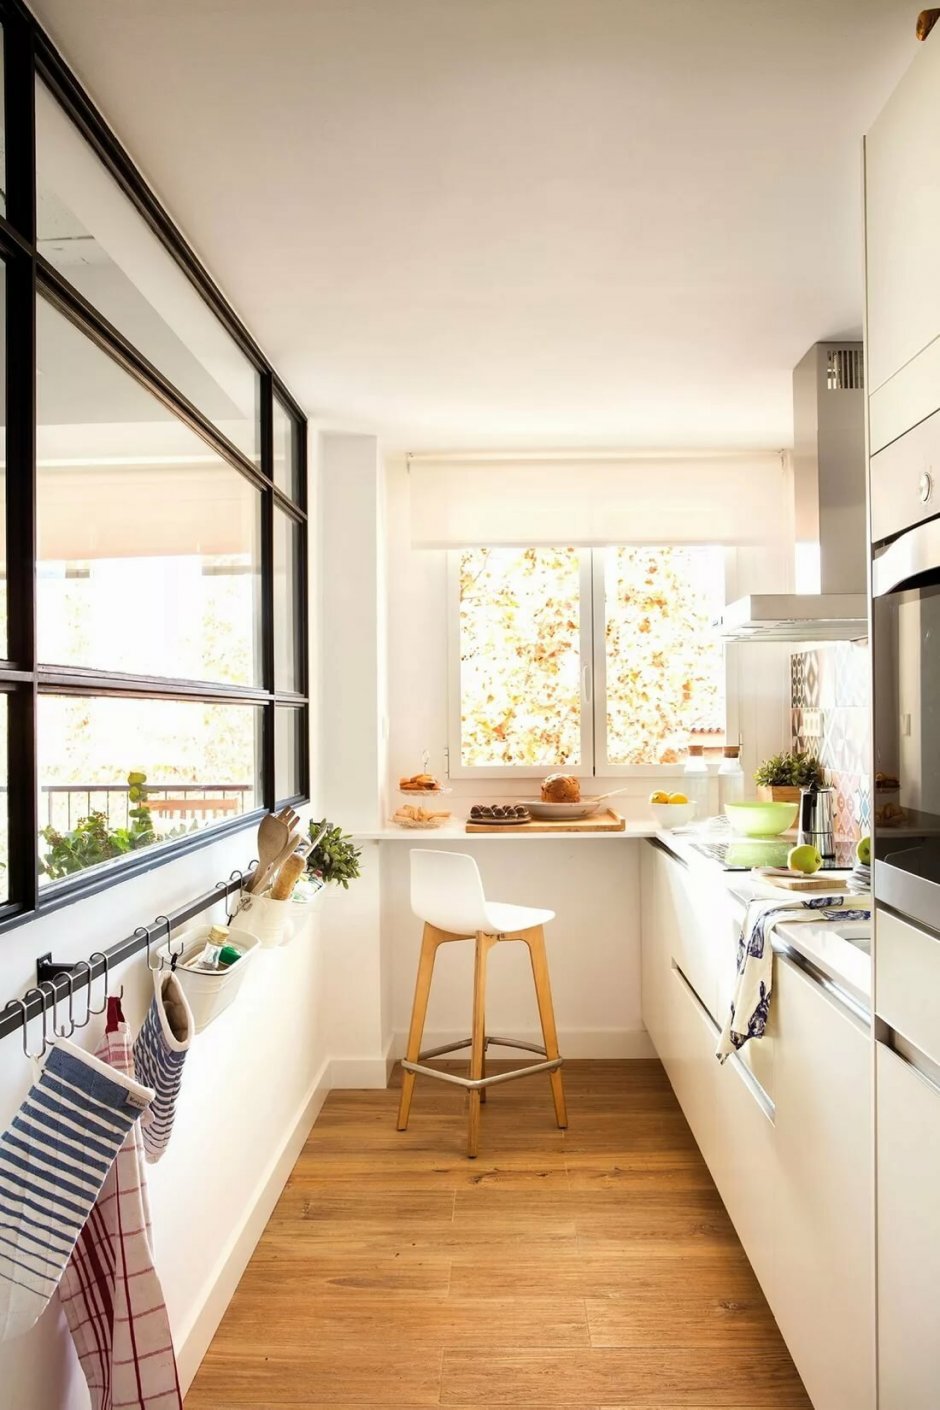 Интерьер узкой кухни с балконом